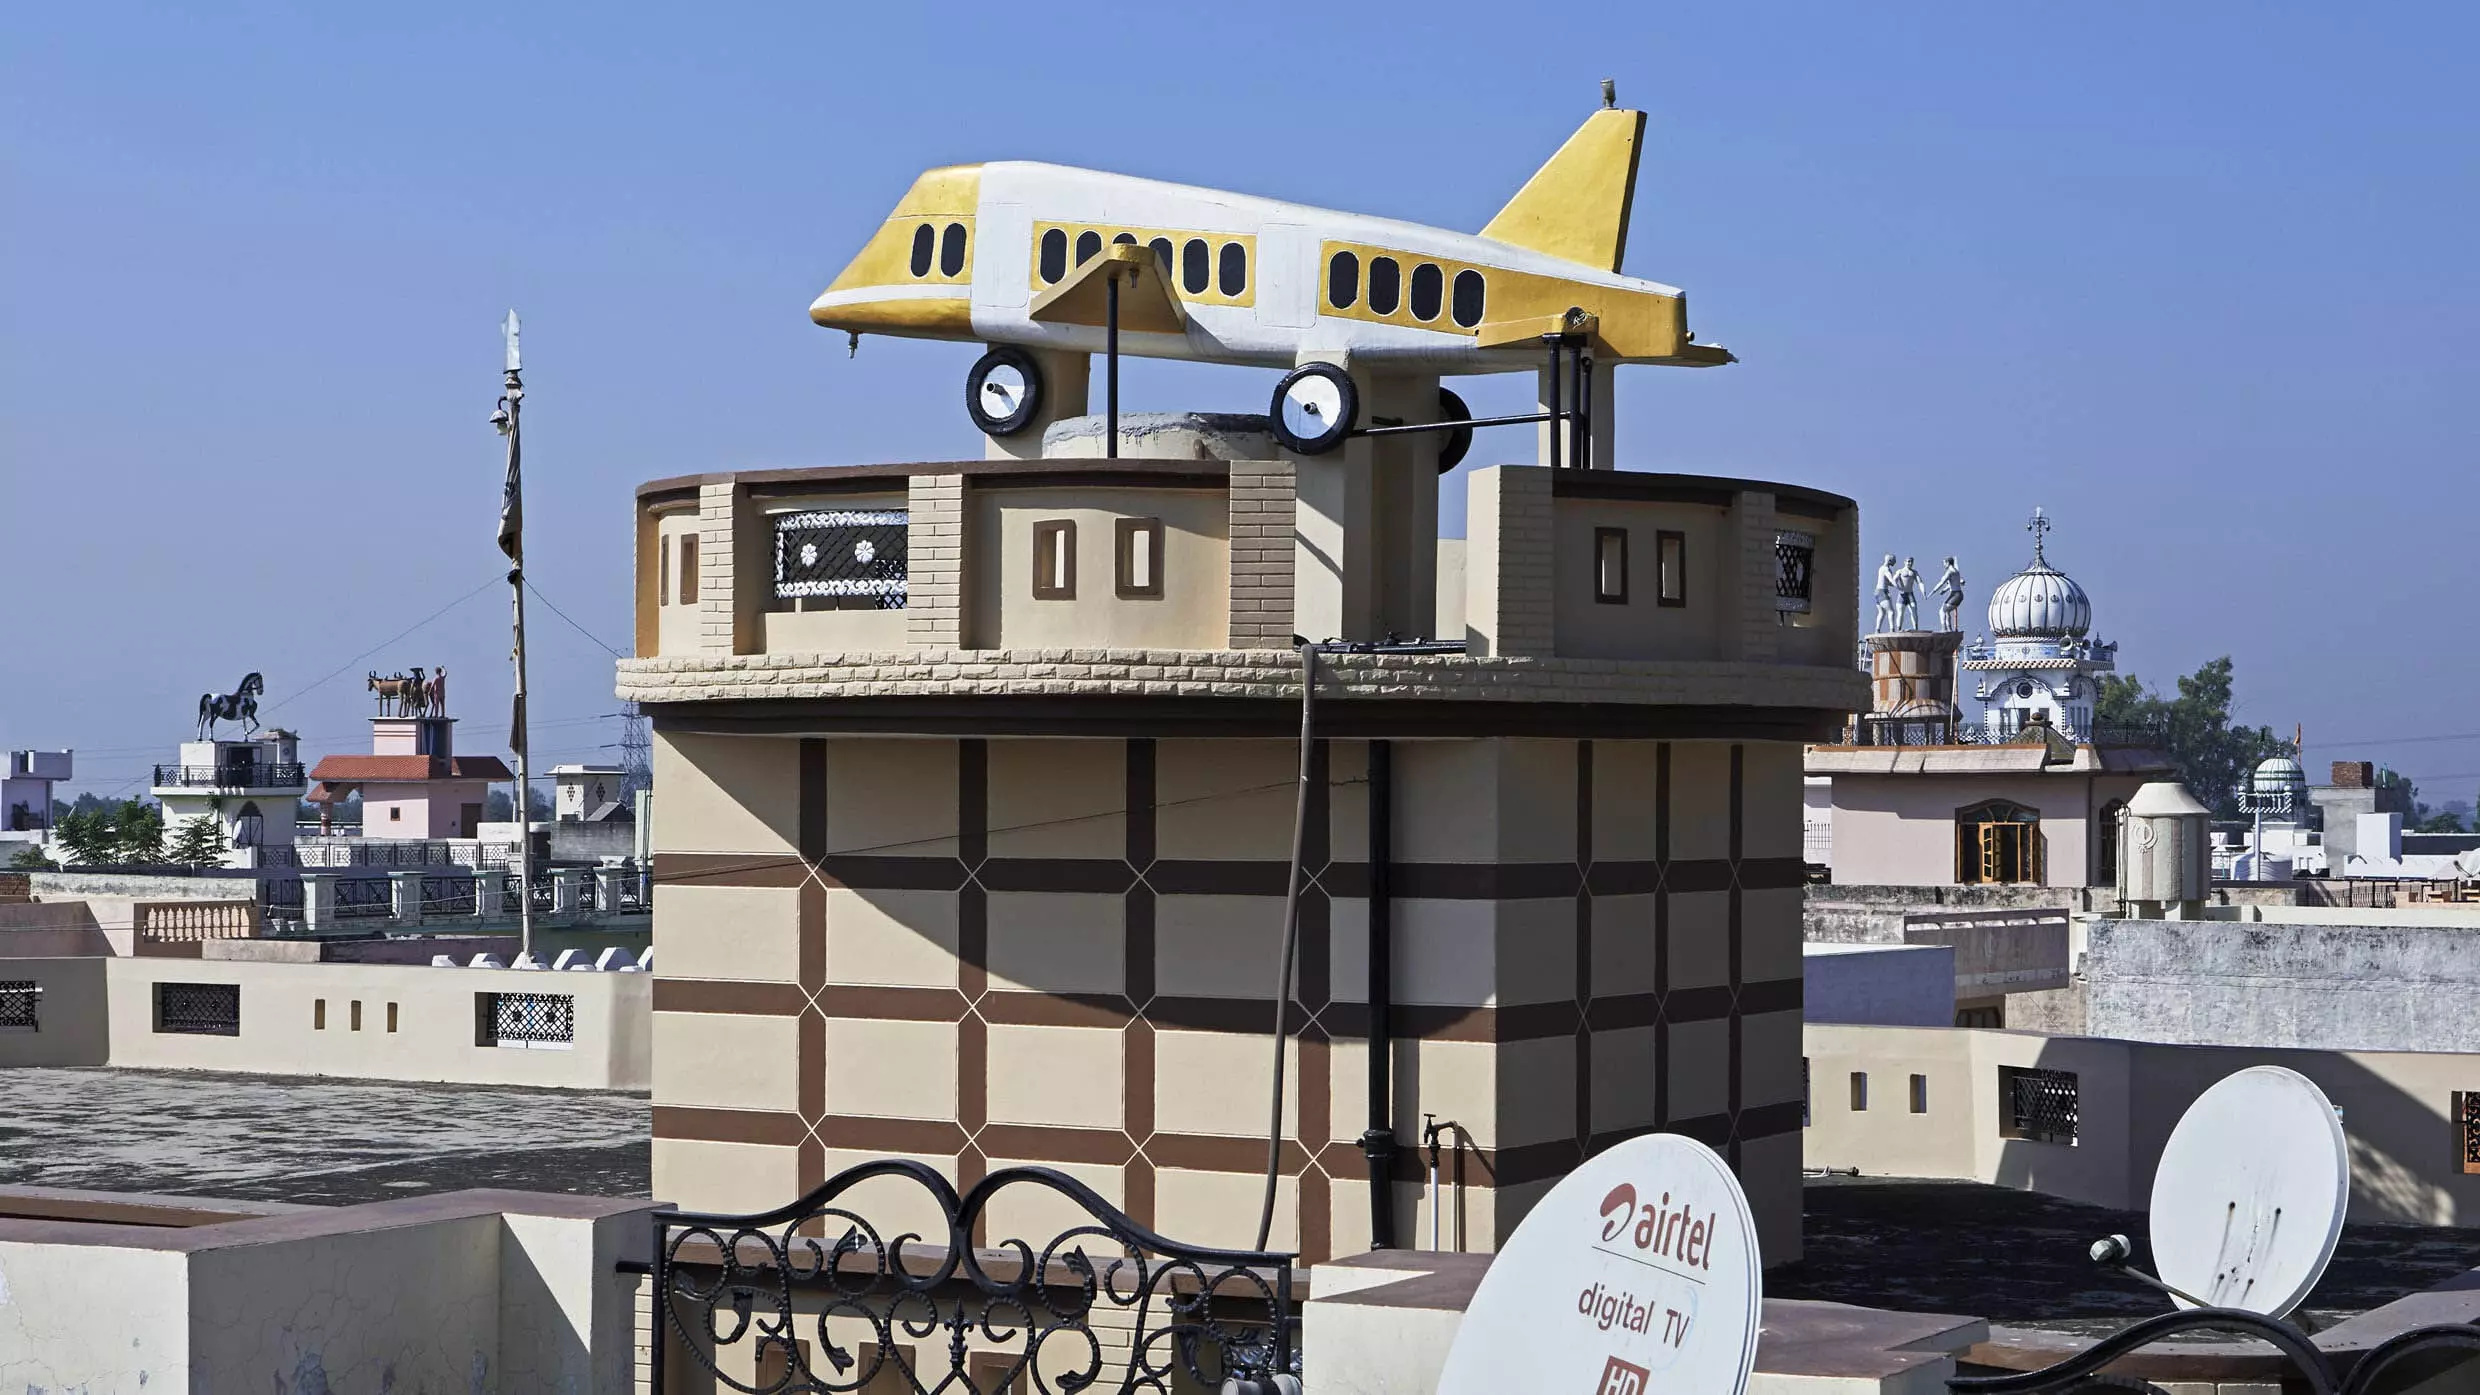 Punjab के अंदरूनी हिस्सों में हर छत पर असाधारण मूर्तियां